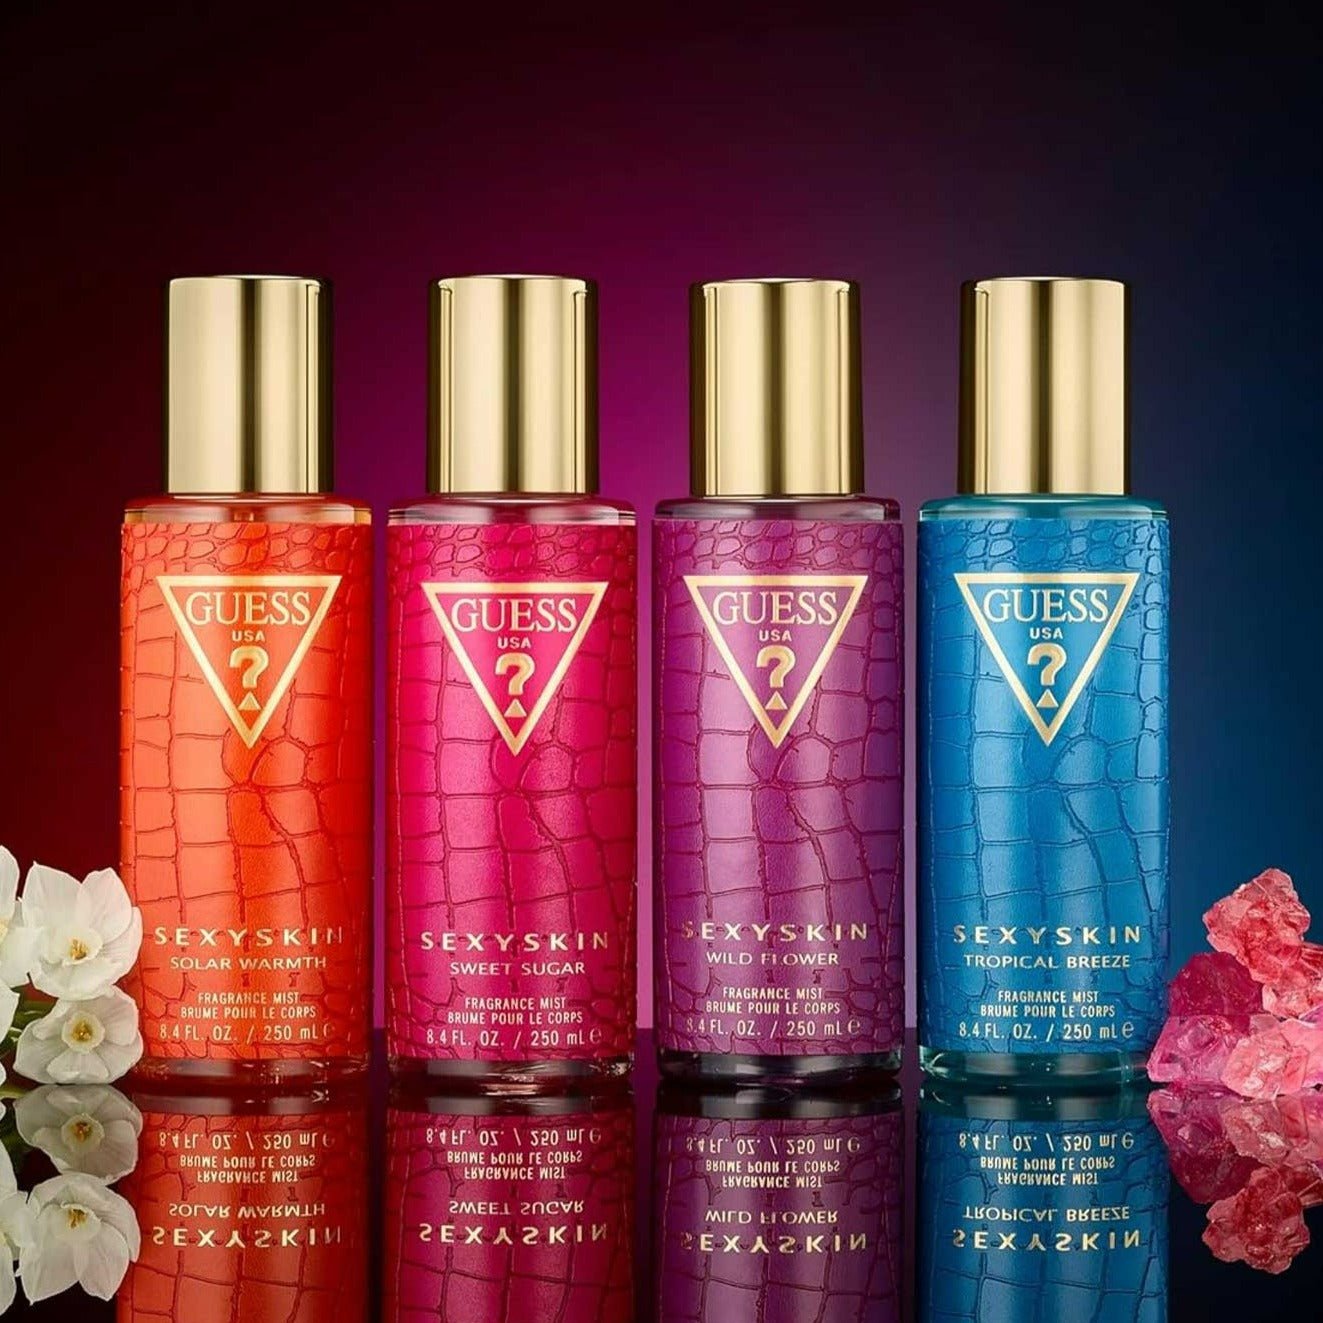 Guess Sexy Skin Wild Flower Body Mist | My Perfume Shop Australia